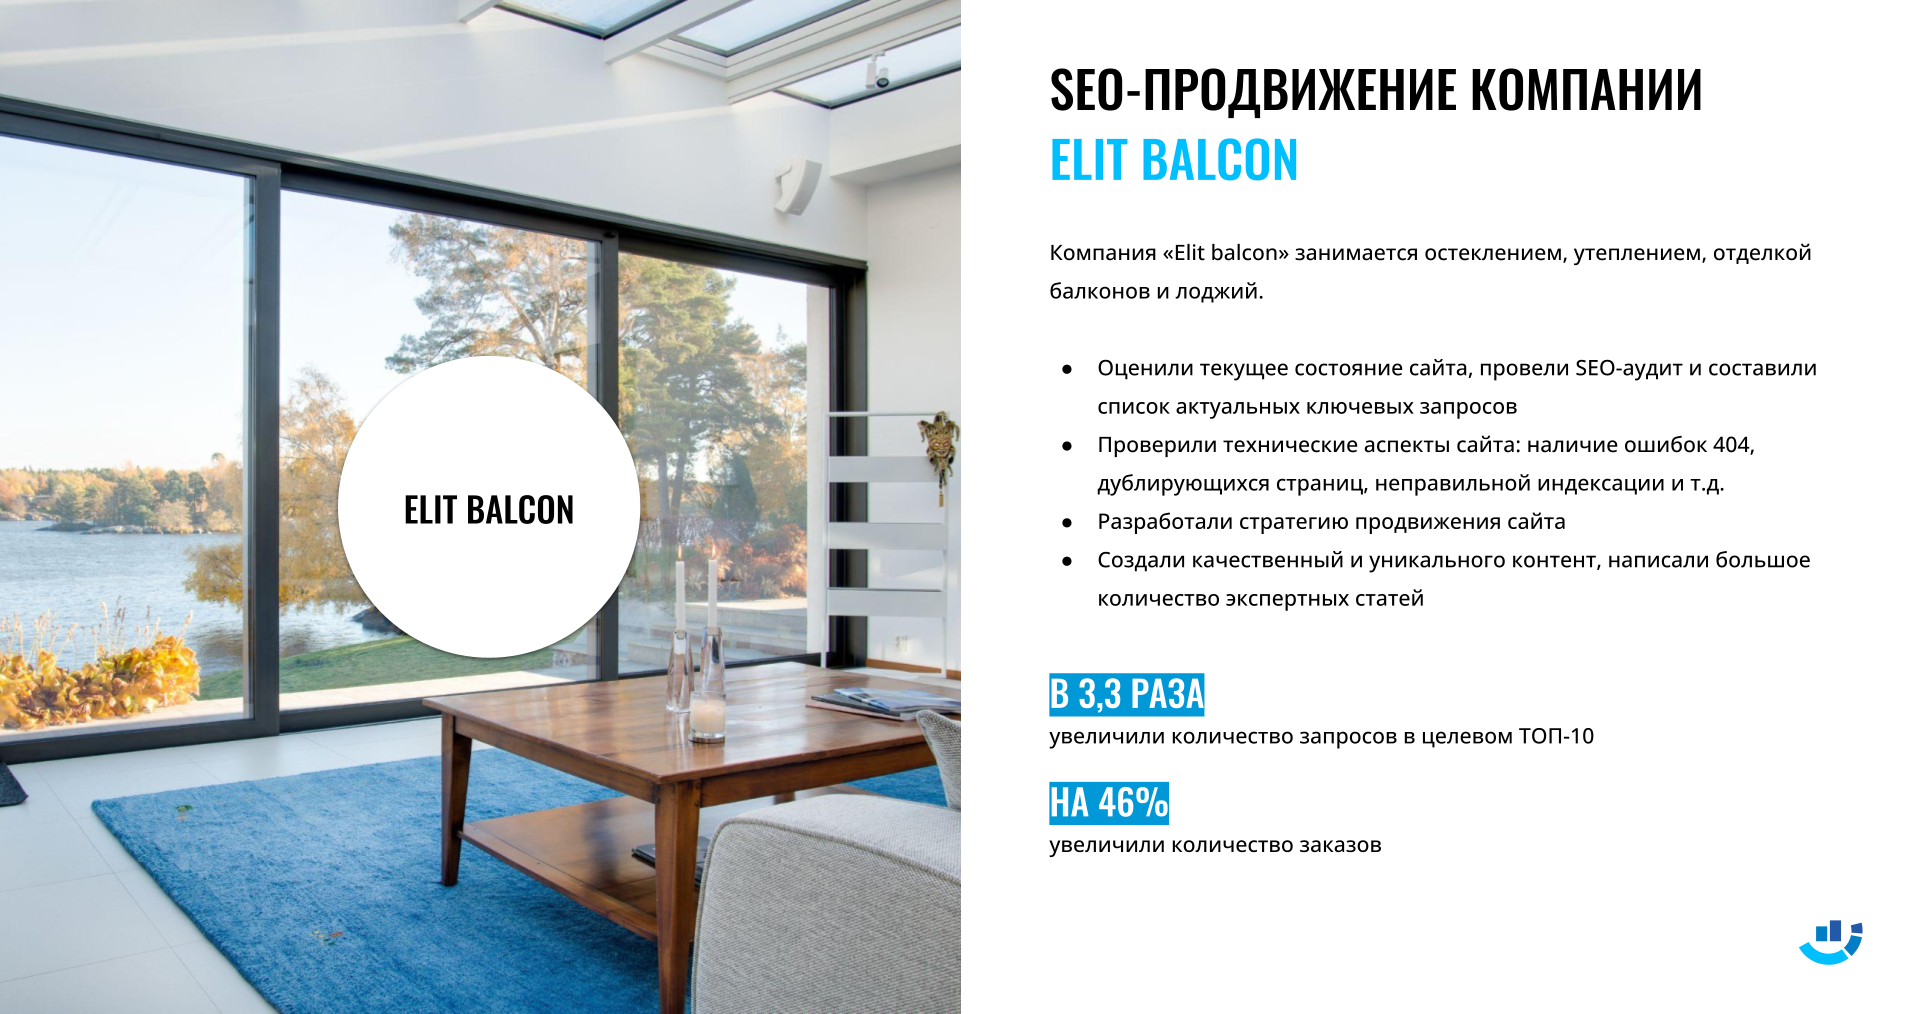 [Кейс] Балконы и лоджии. Интернет-маркетинг для компании Elit Balcon